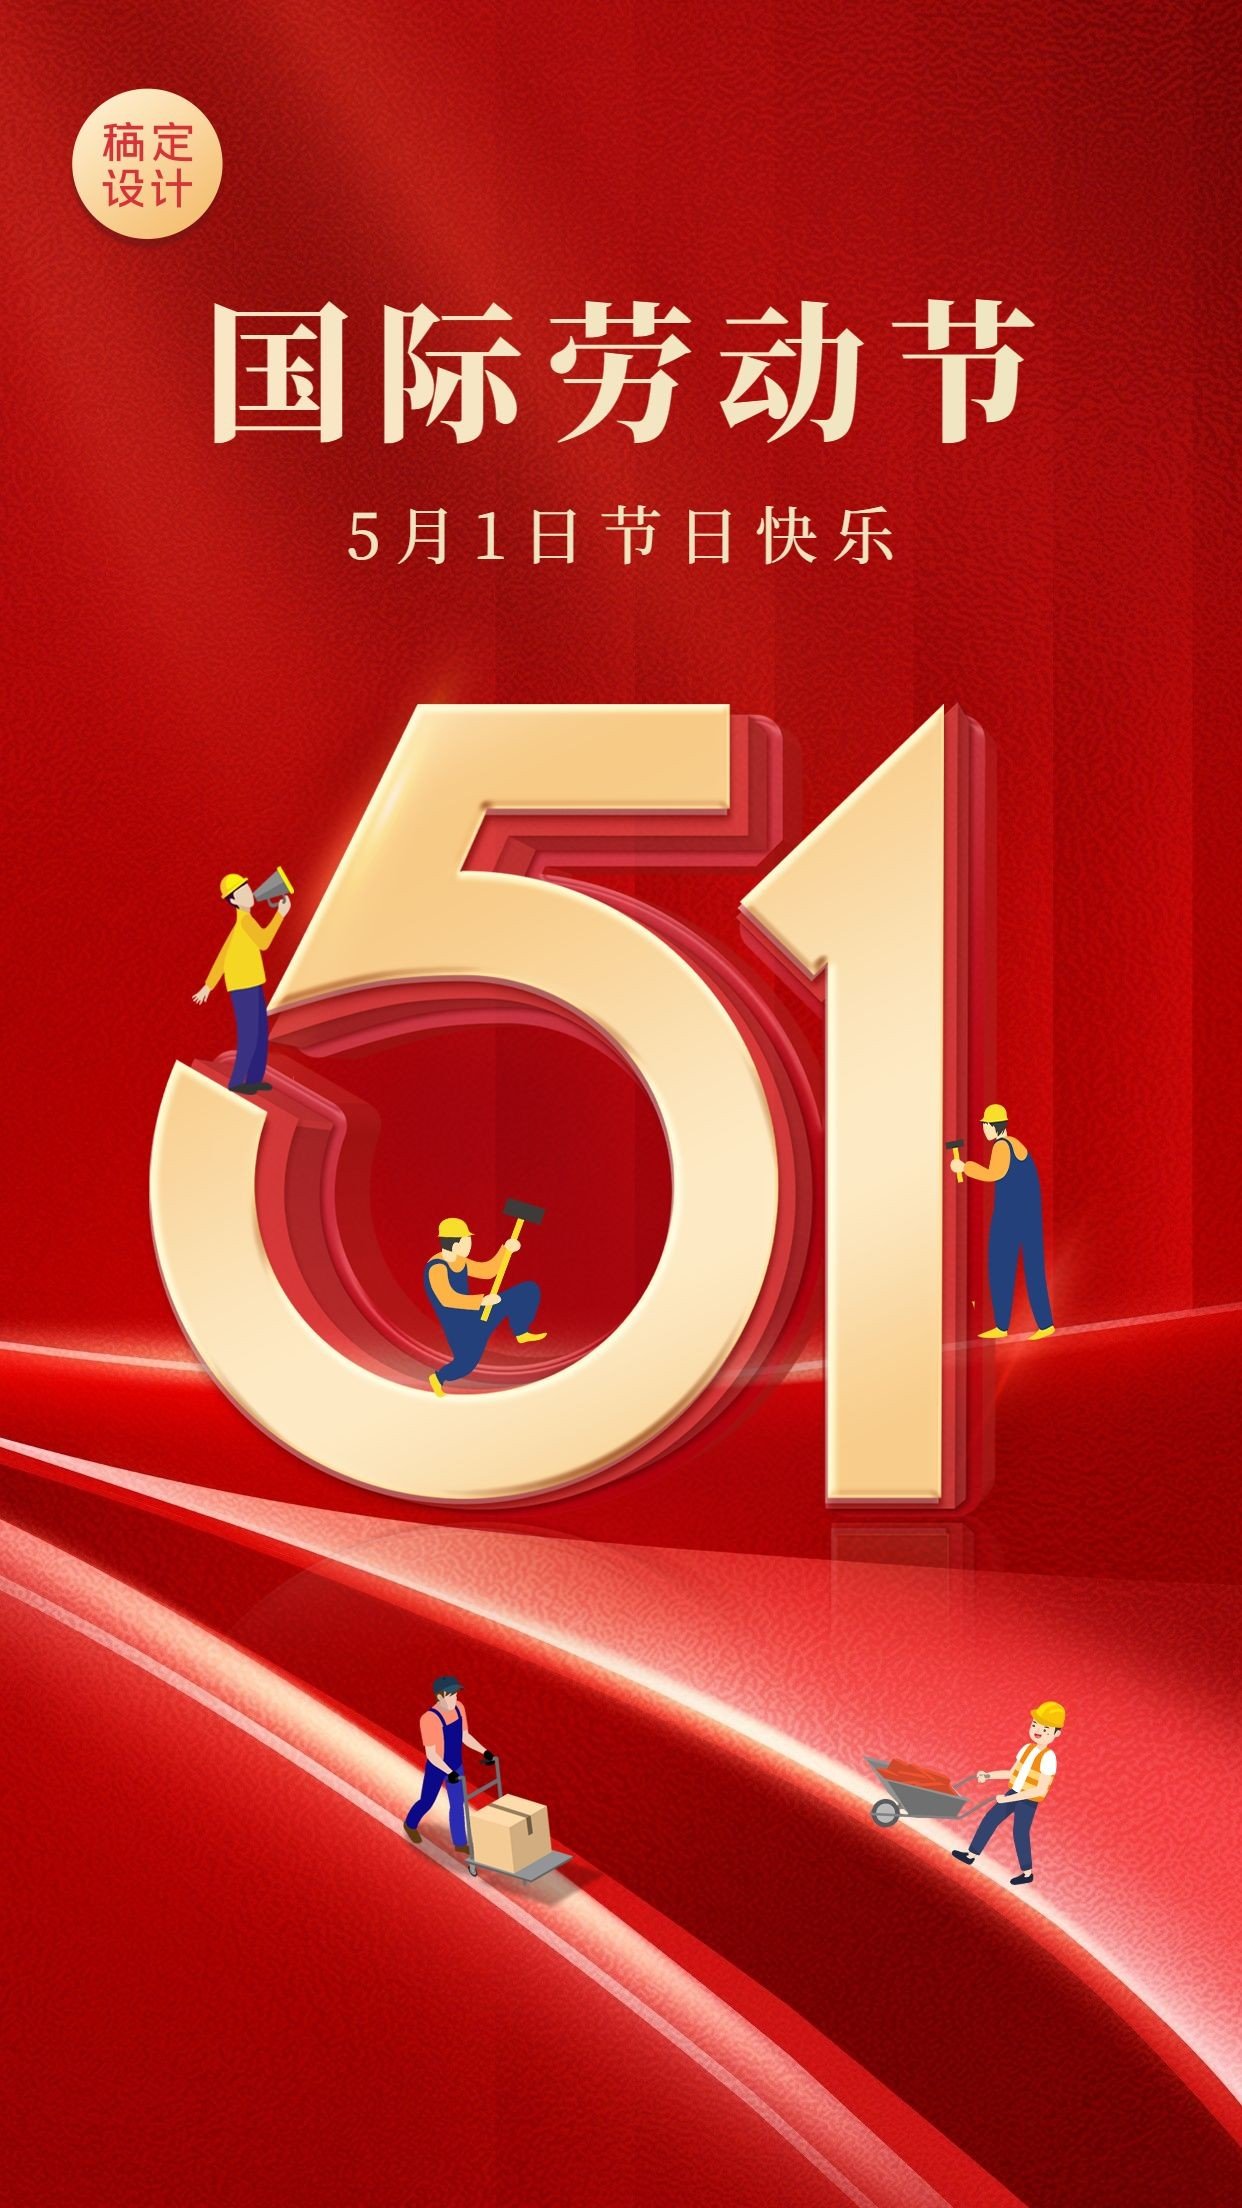 劳动节节日祝福党政红金手机海报